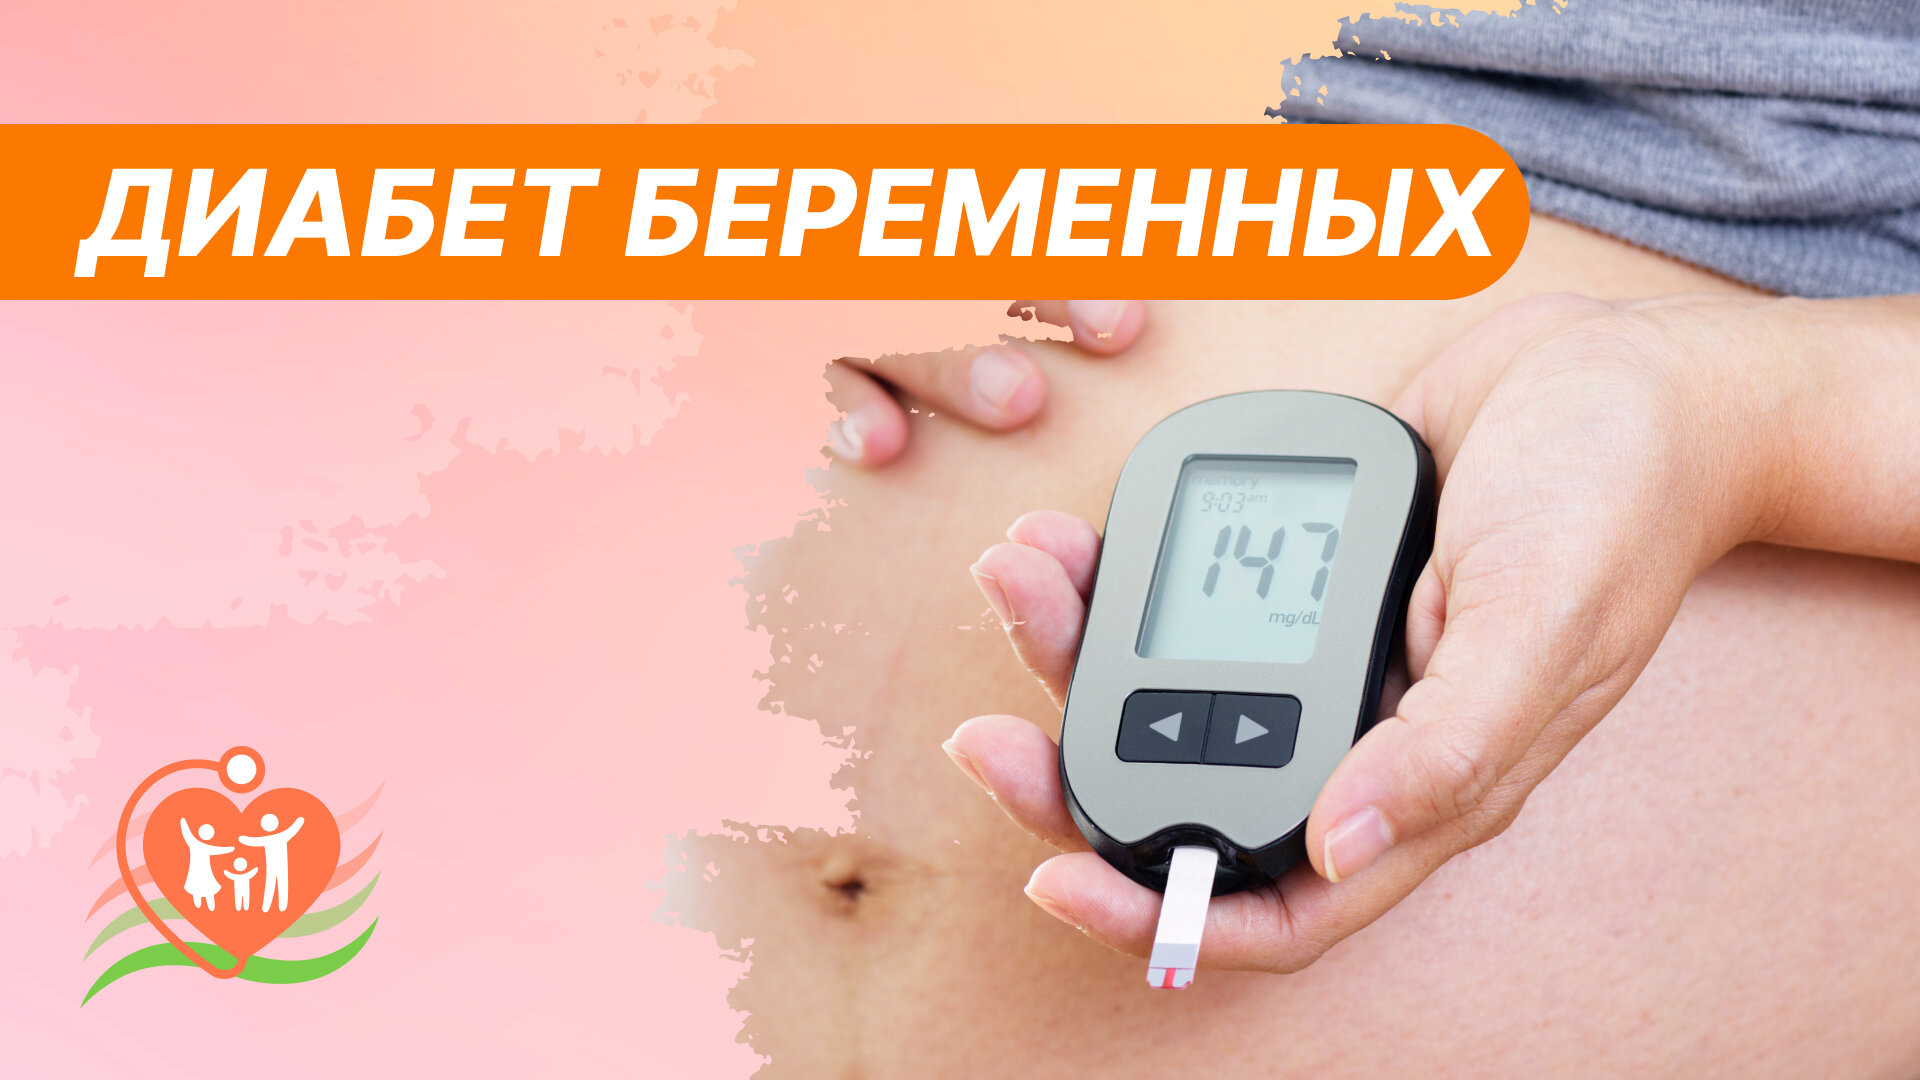 Гестационный диабет беременных: как справиться и родить здорового малыша